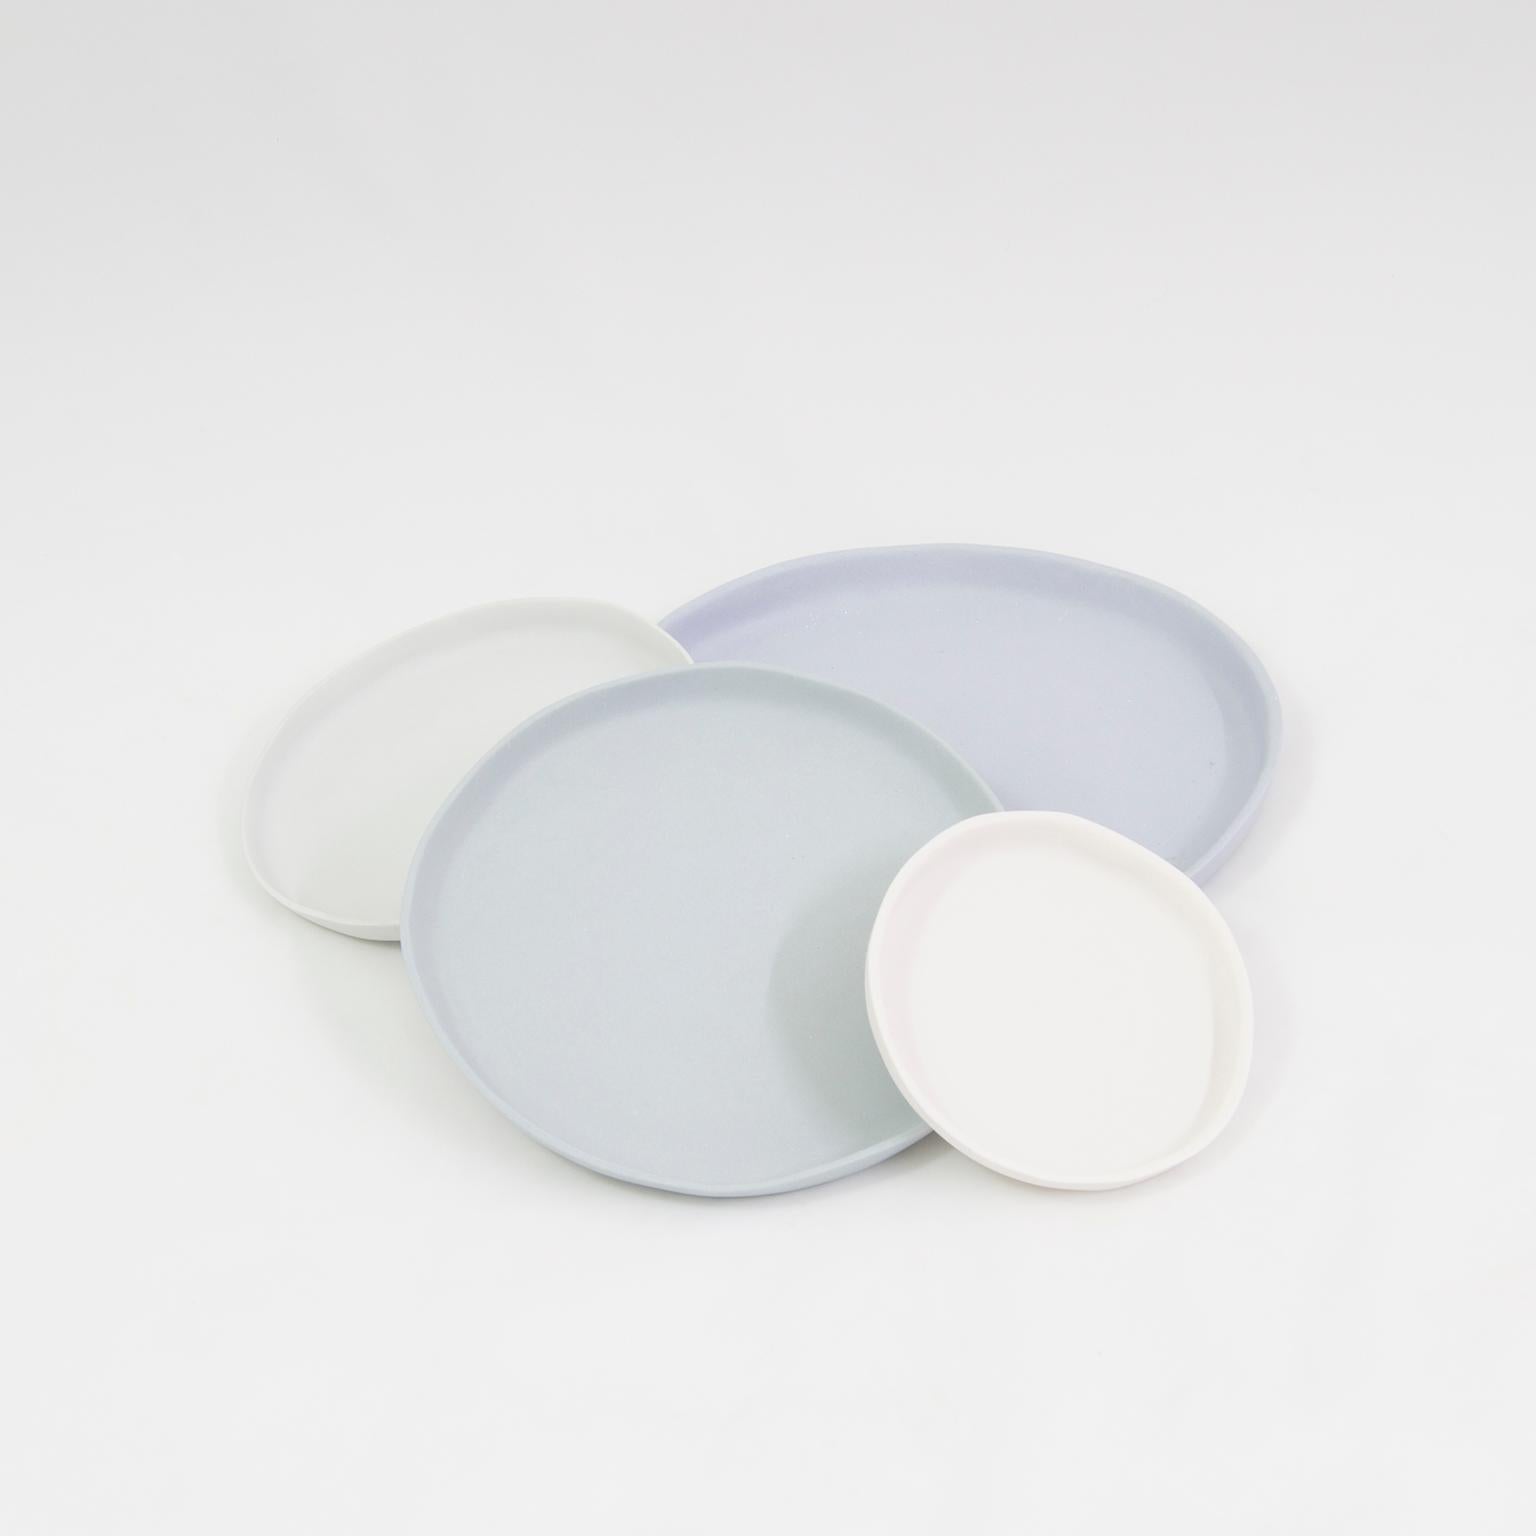 Minimalist Contemporary Service Plates Matte Grey Porcelain For Sale